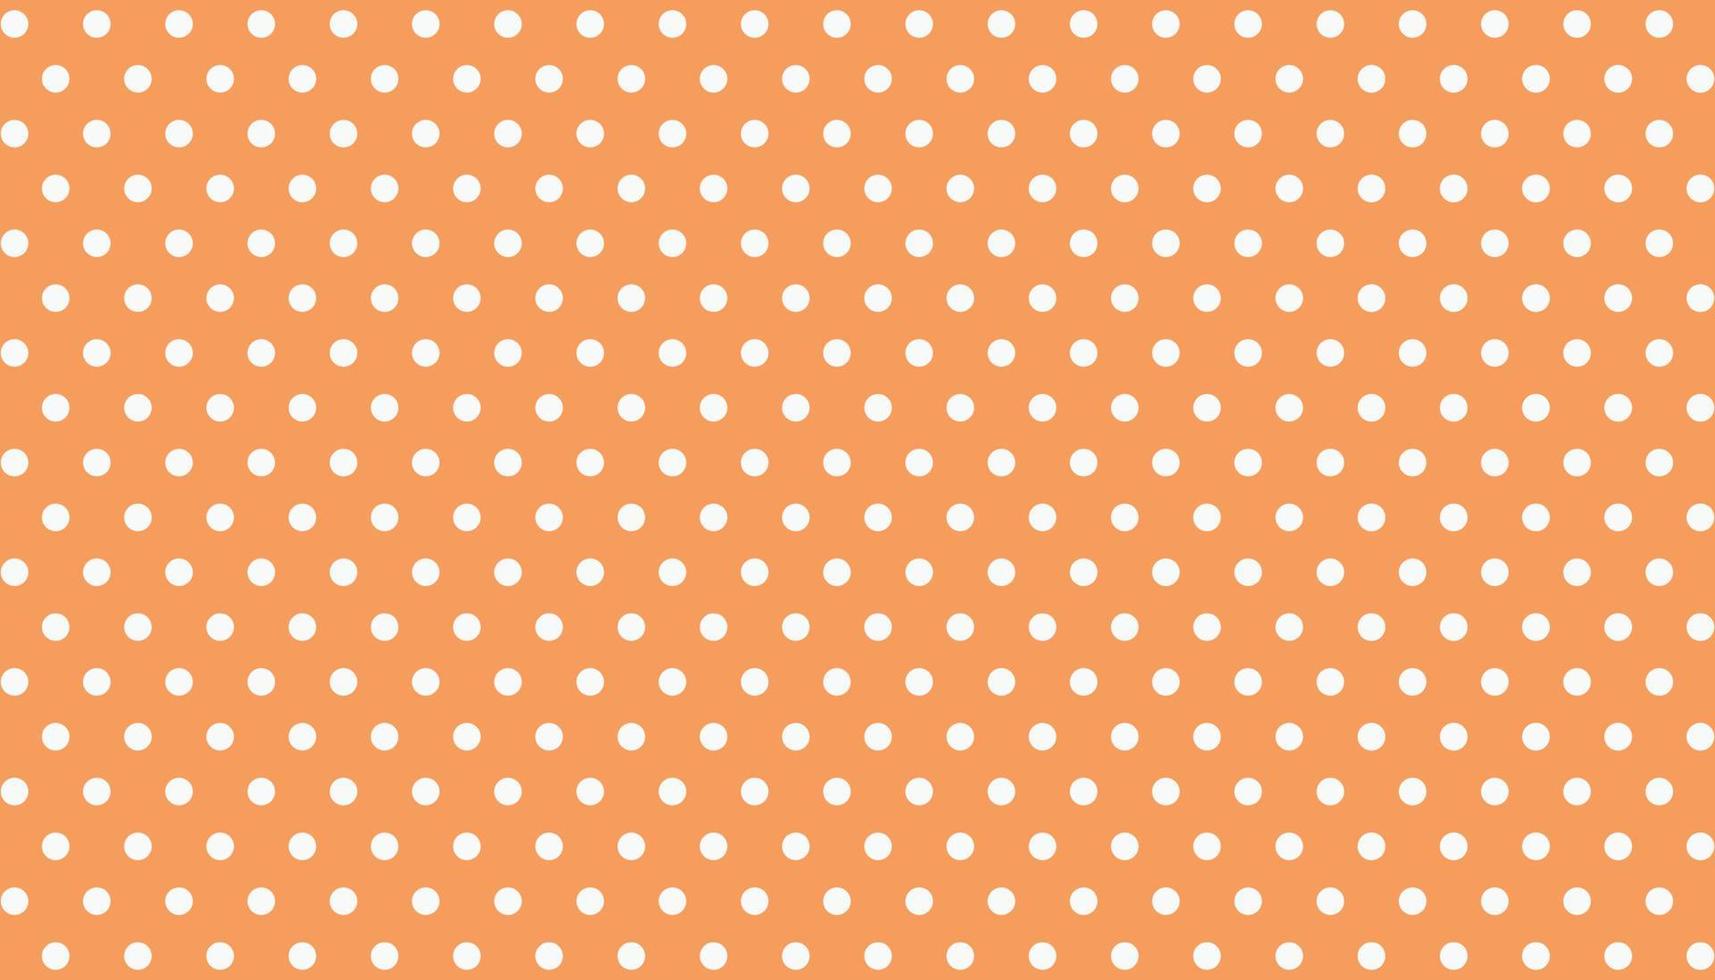 padrão sem emenda de bolinhas laranja retrô elegante fundo vetor